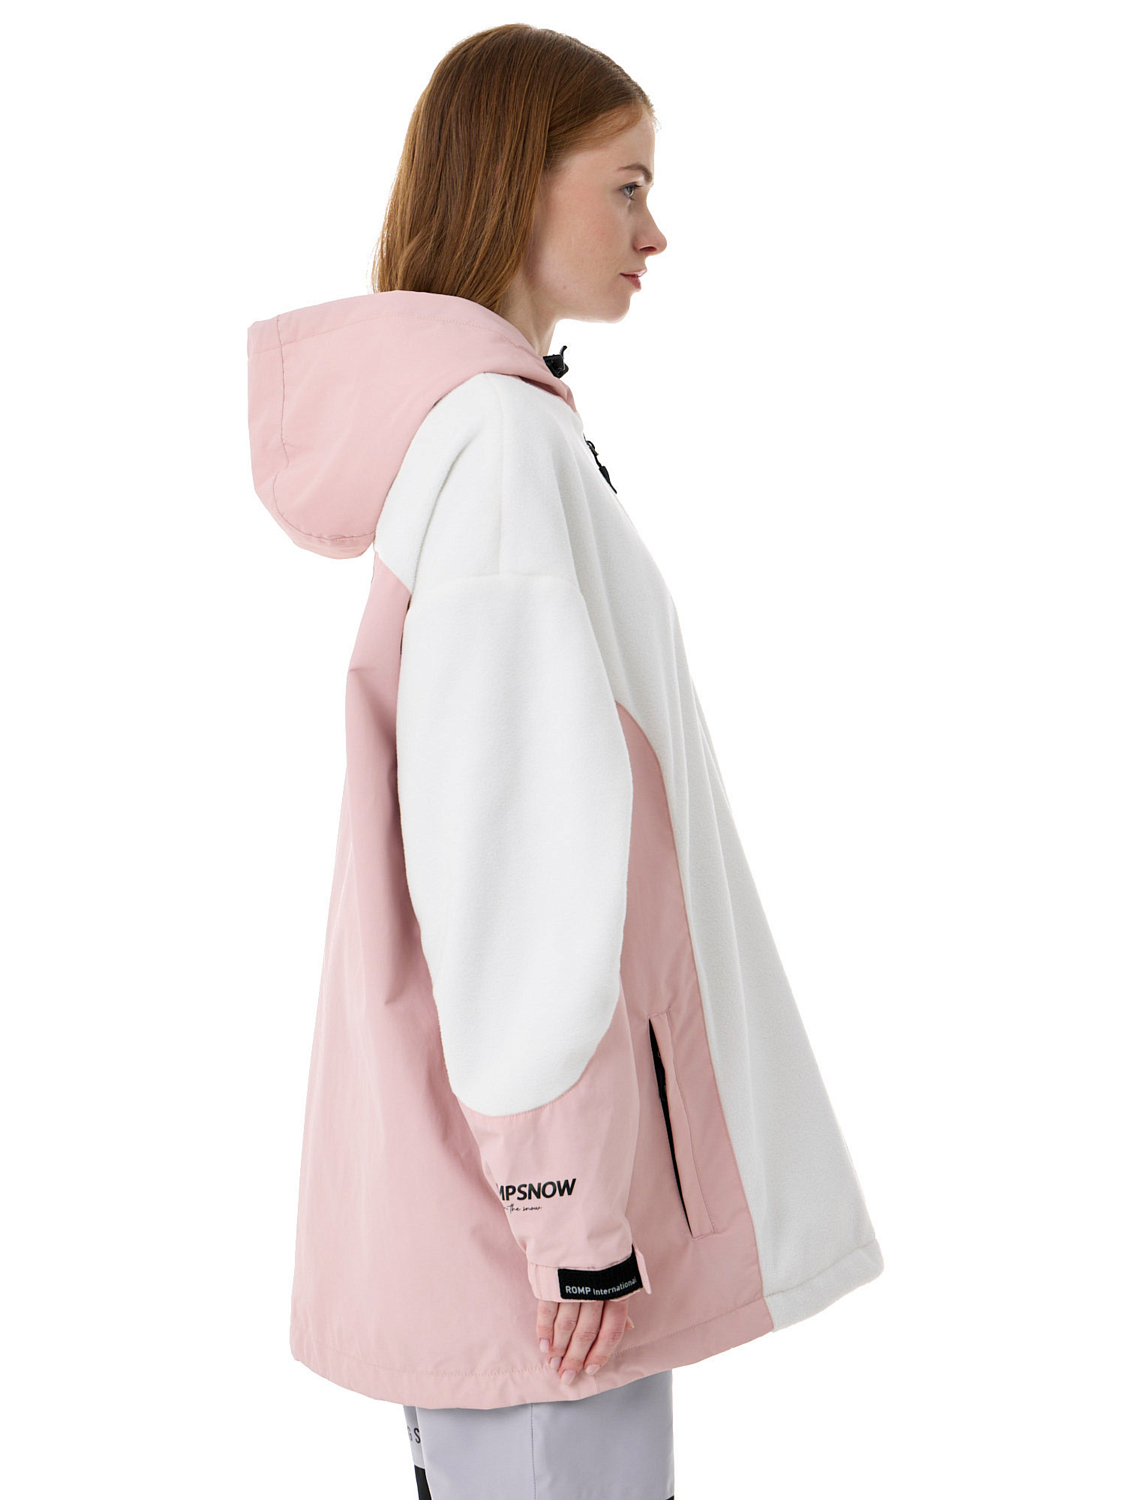 Куртка сноубордическая ROMP Fleece Anorak W Pink